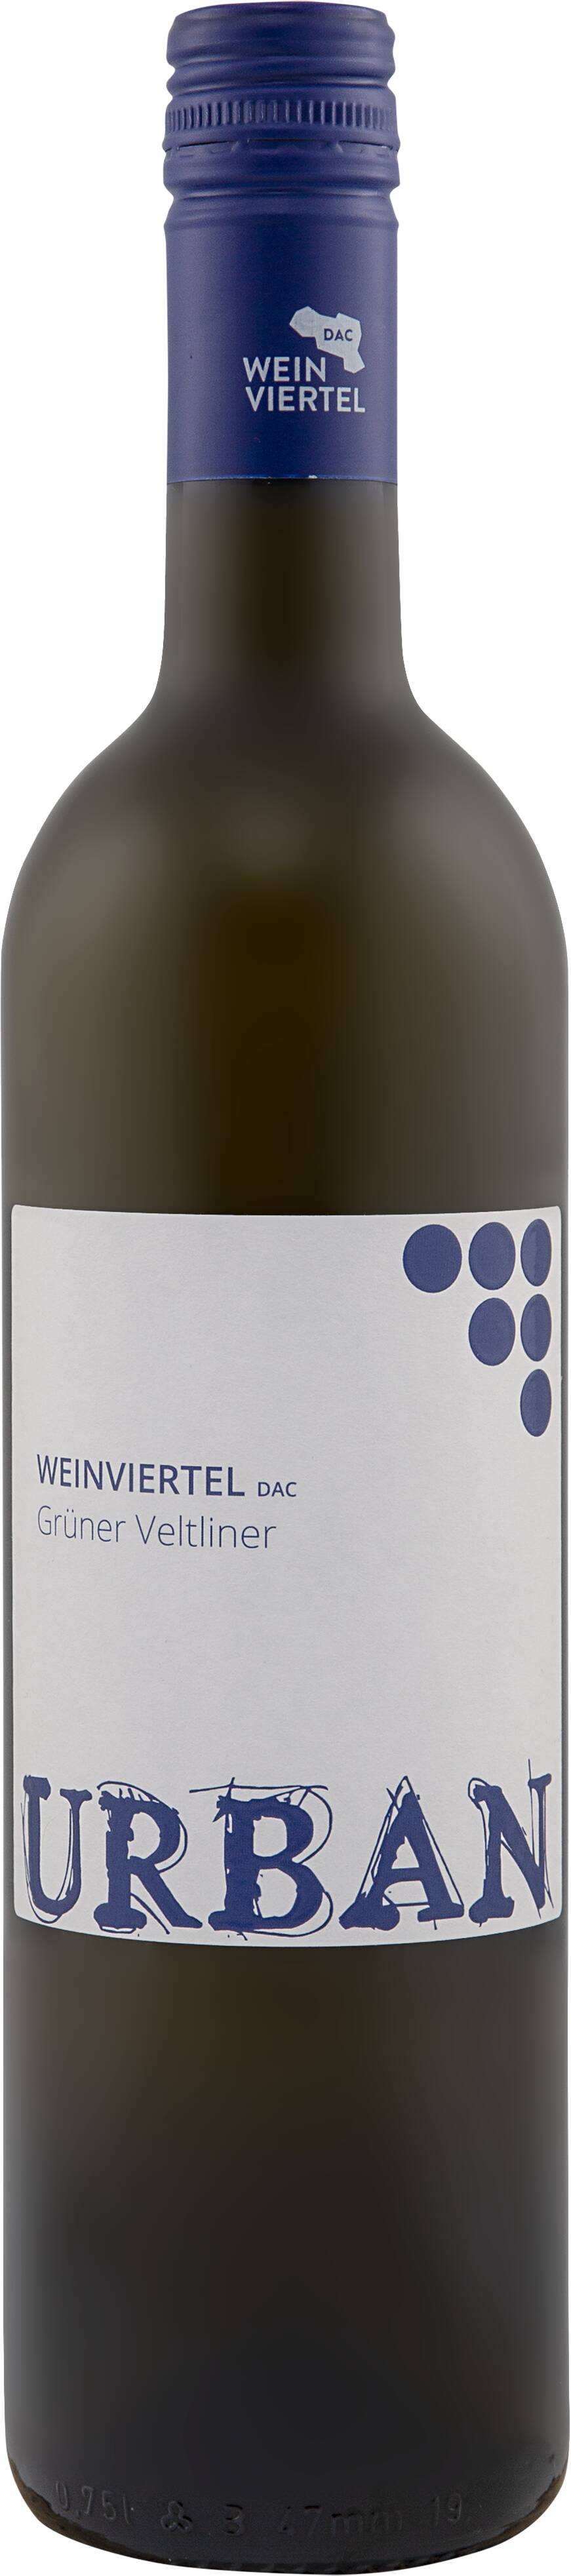 Weinviertel DAC Grüner Veltliner